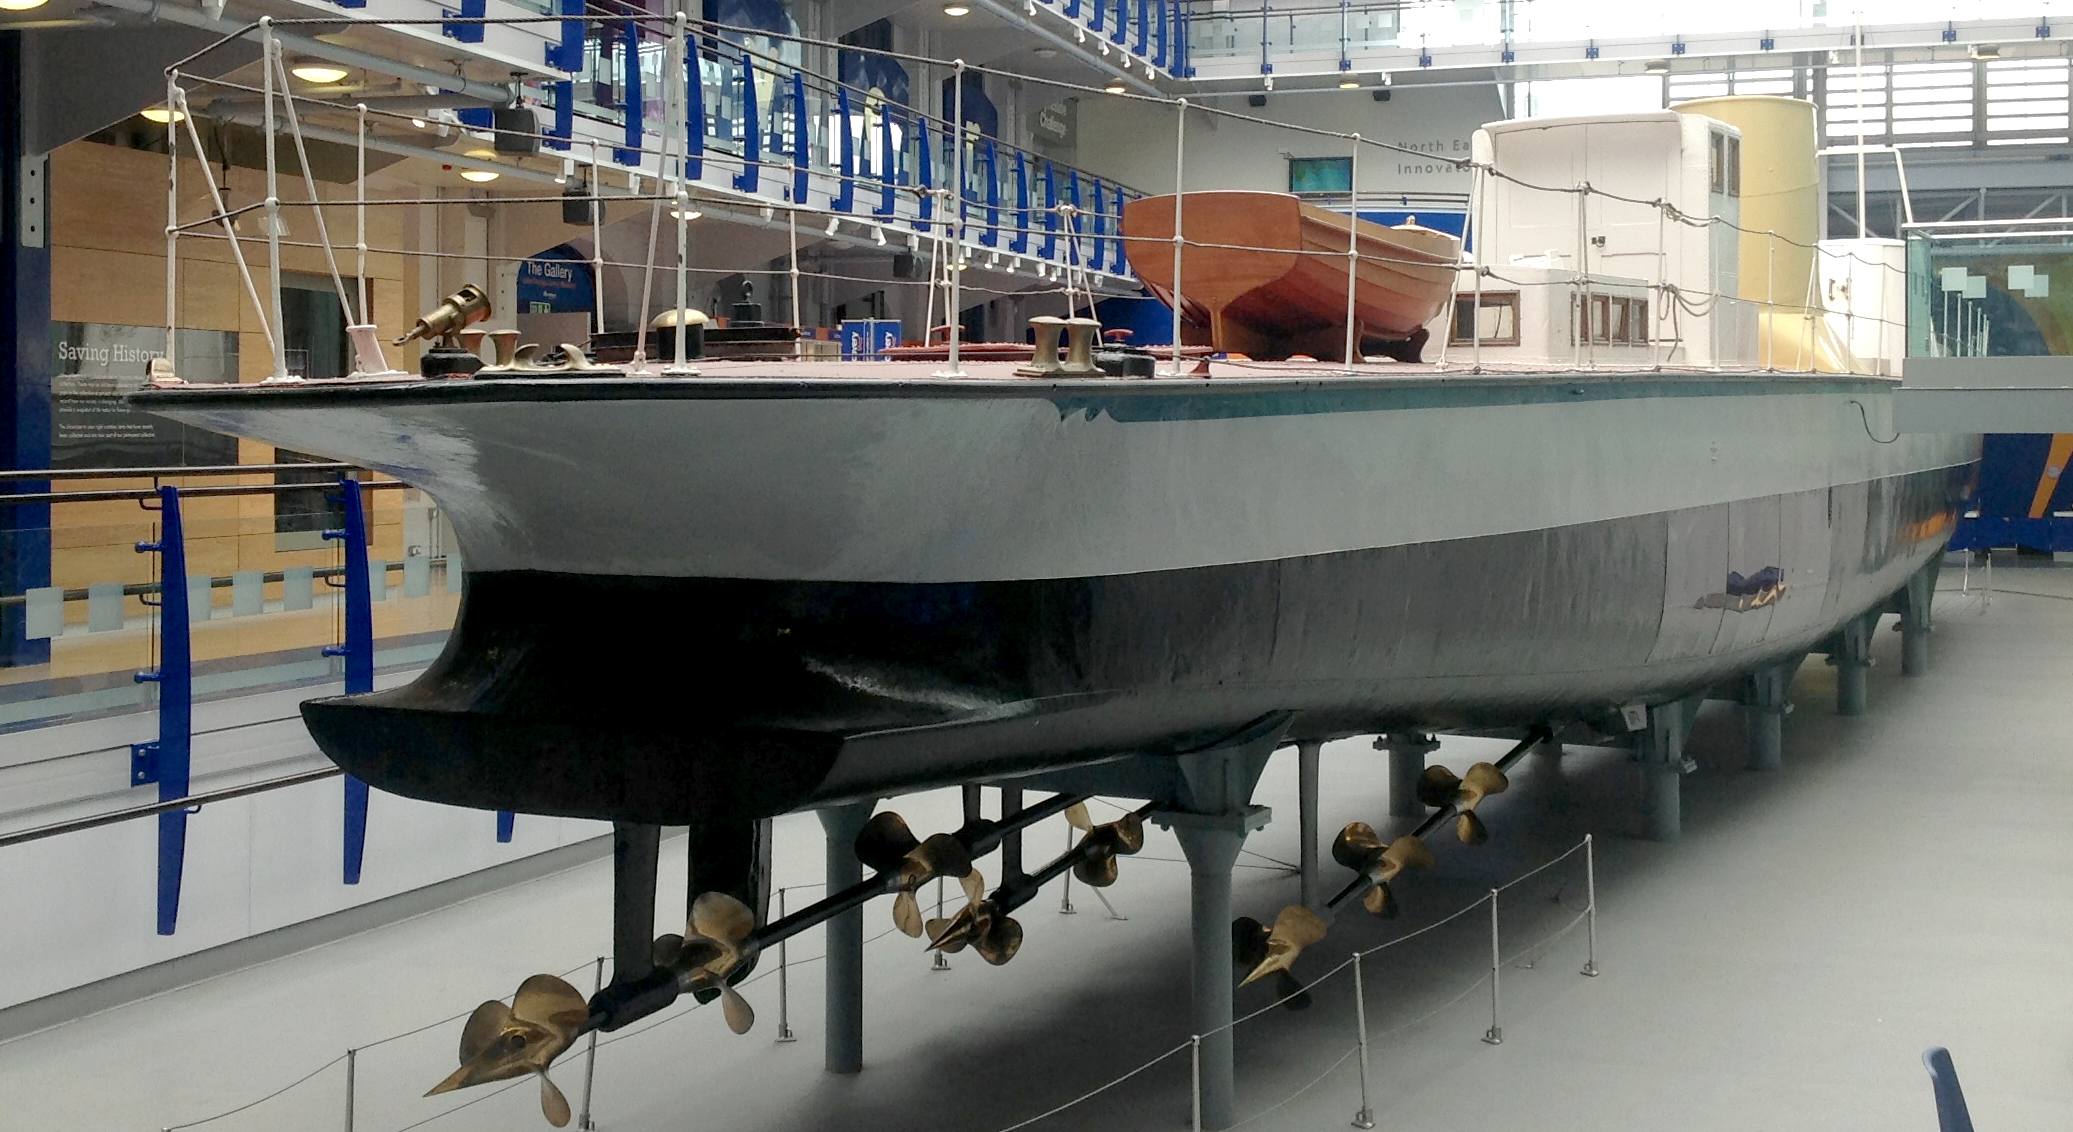 turbinia_museum_parsons_steam_turbine_yacht.jpg